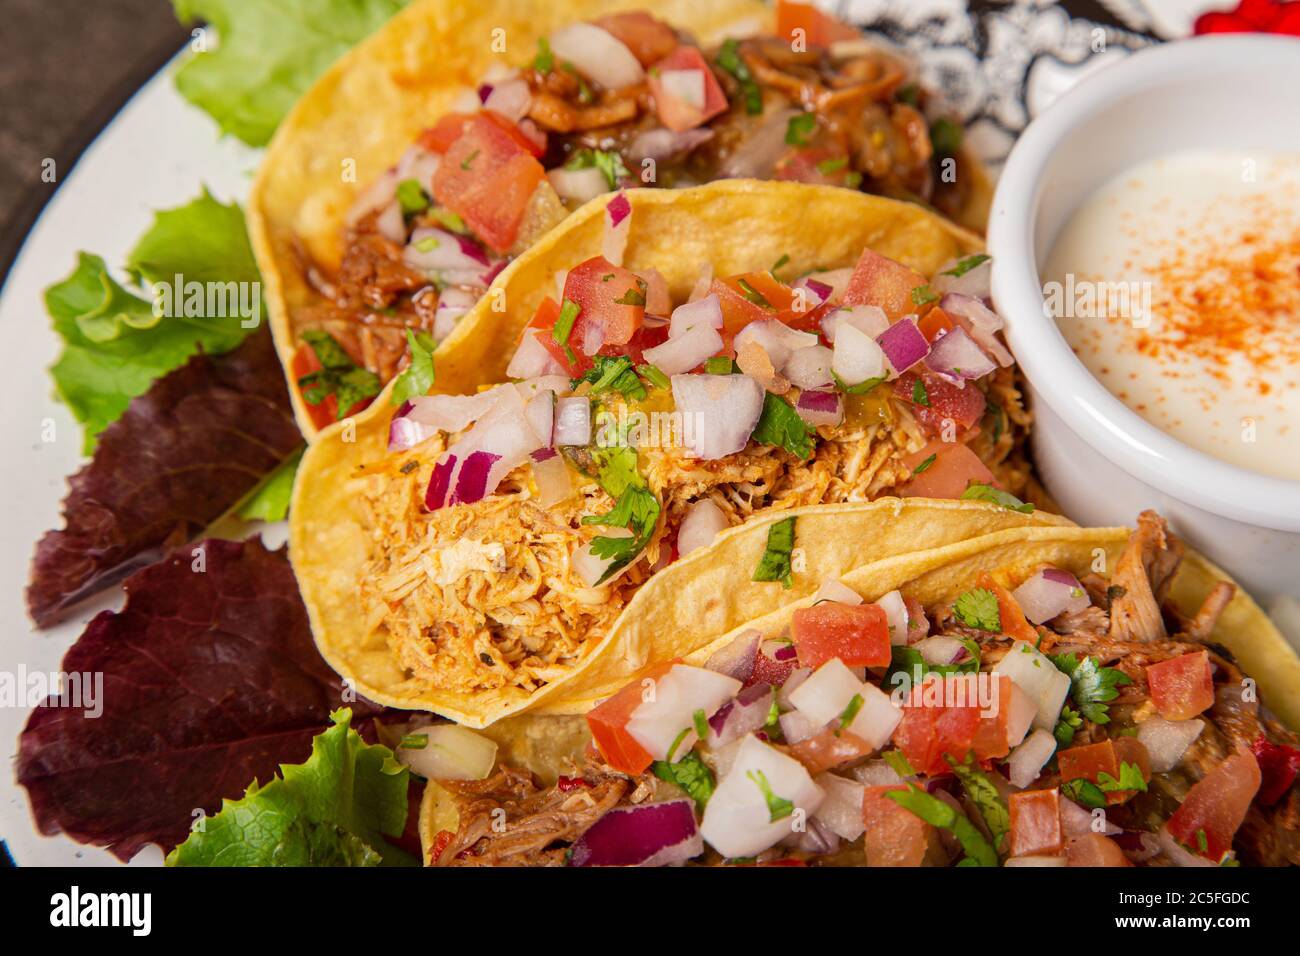 Varietà di tacos di carne tipici messicani. Immagine isolata Foto Stock